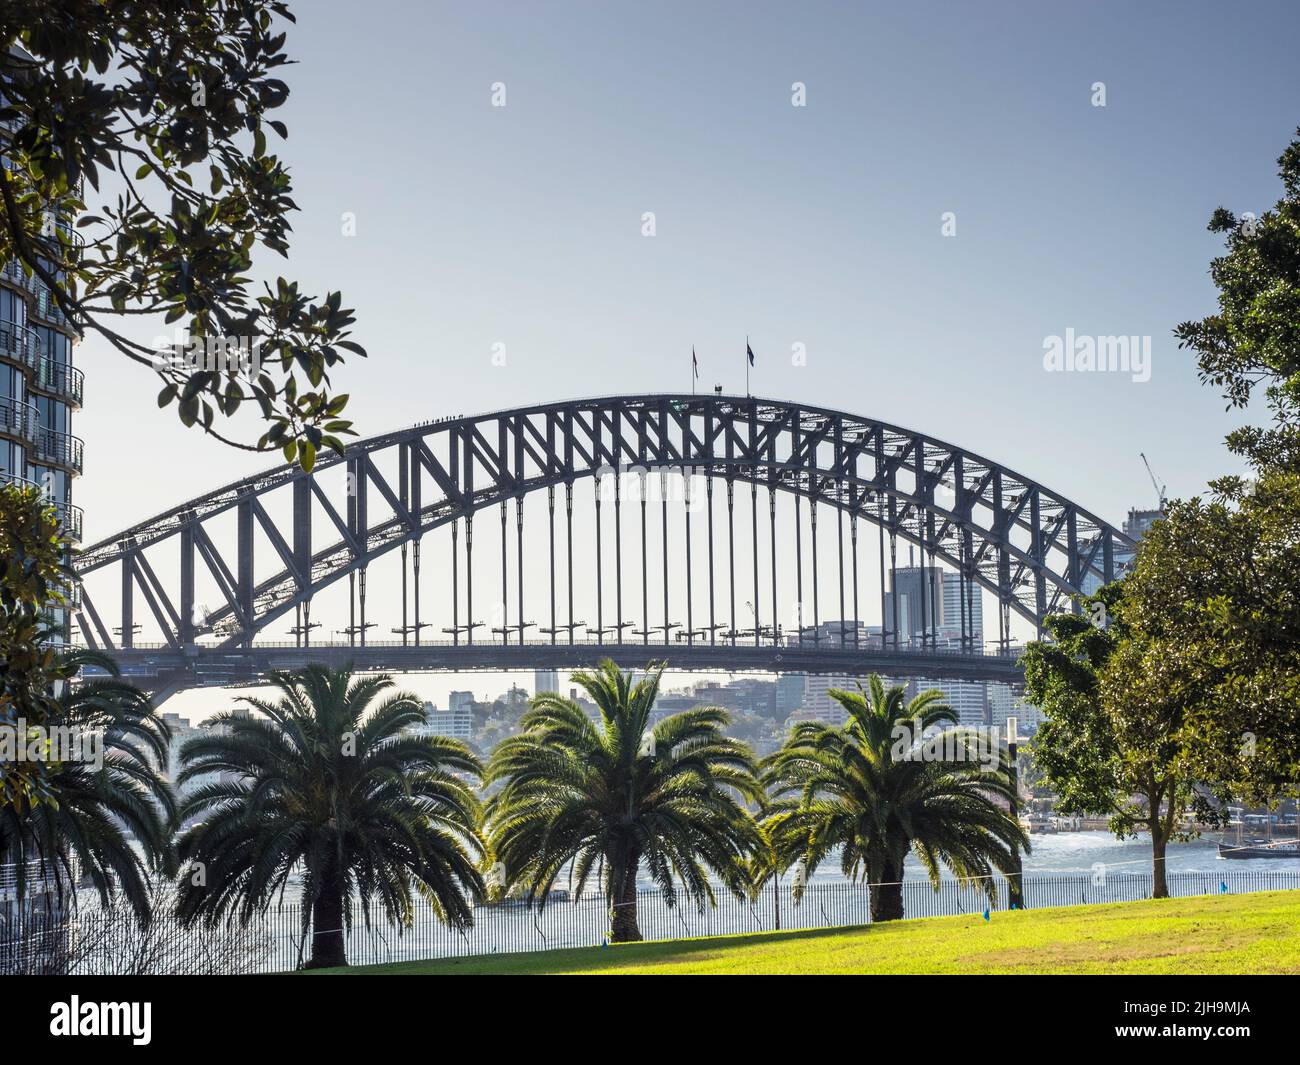 Il Sydney Harbour Bridge sopra le palme da datteri lungo la Tarpeian Way vicino a Bennelong Point. Foto Stock